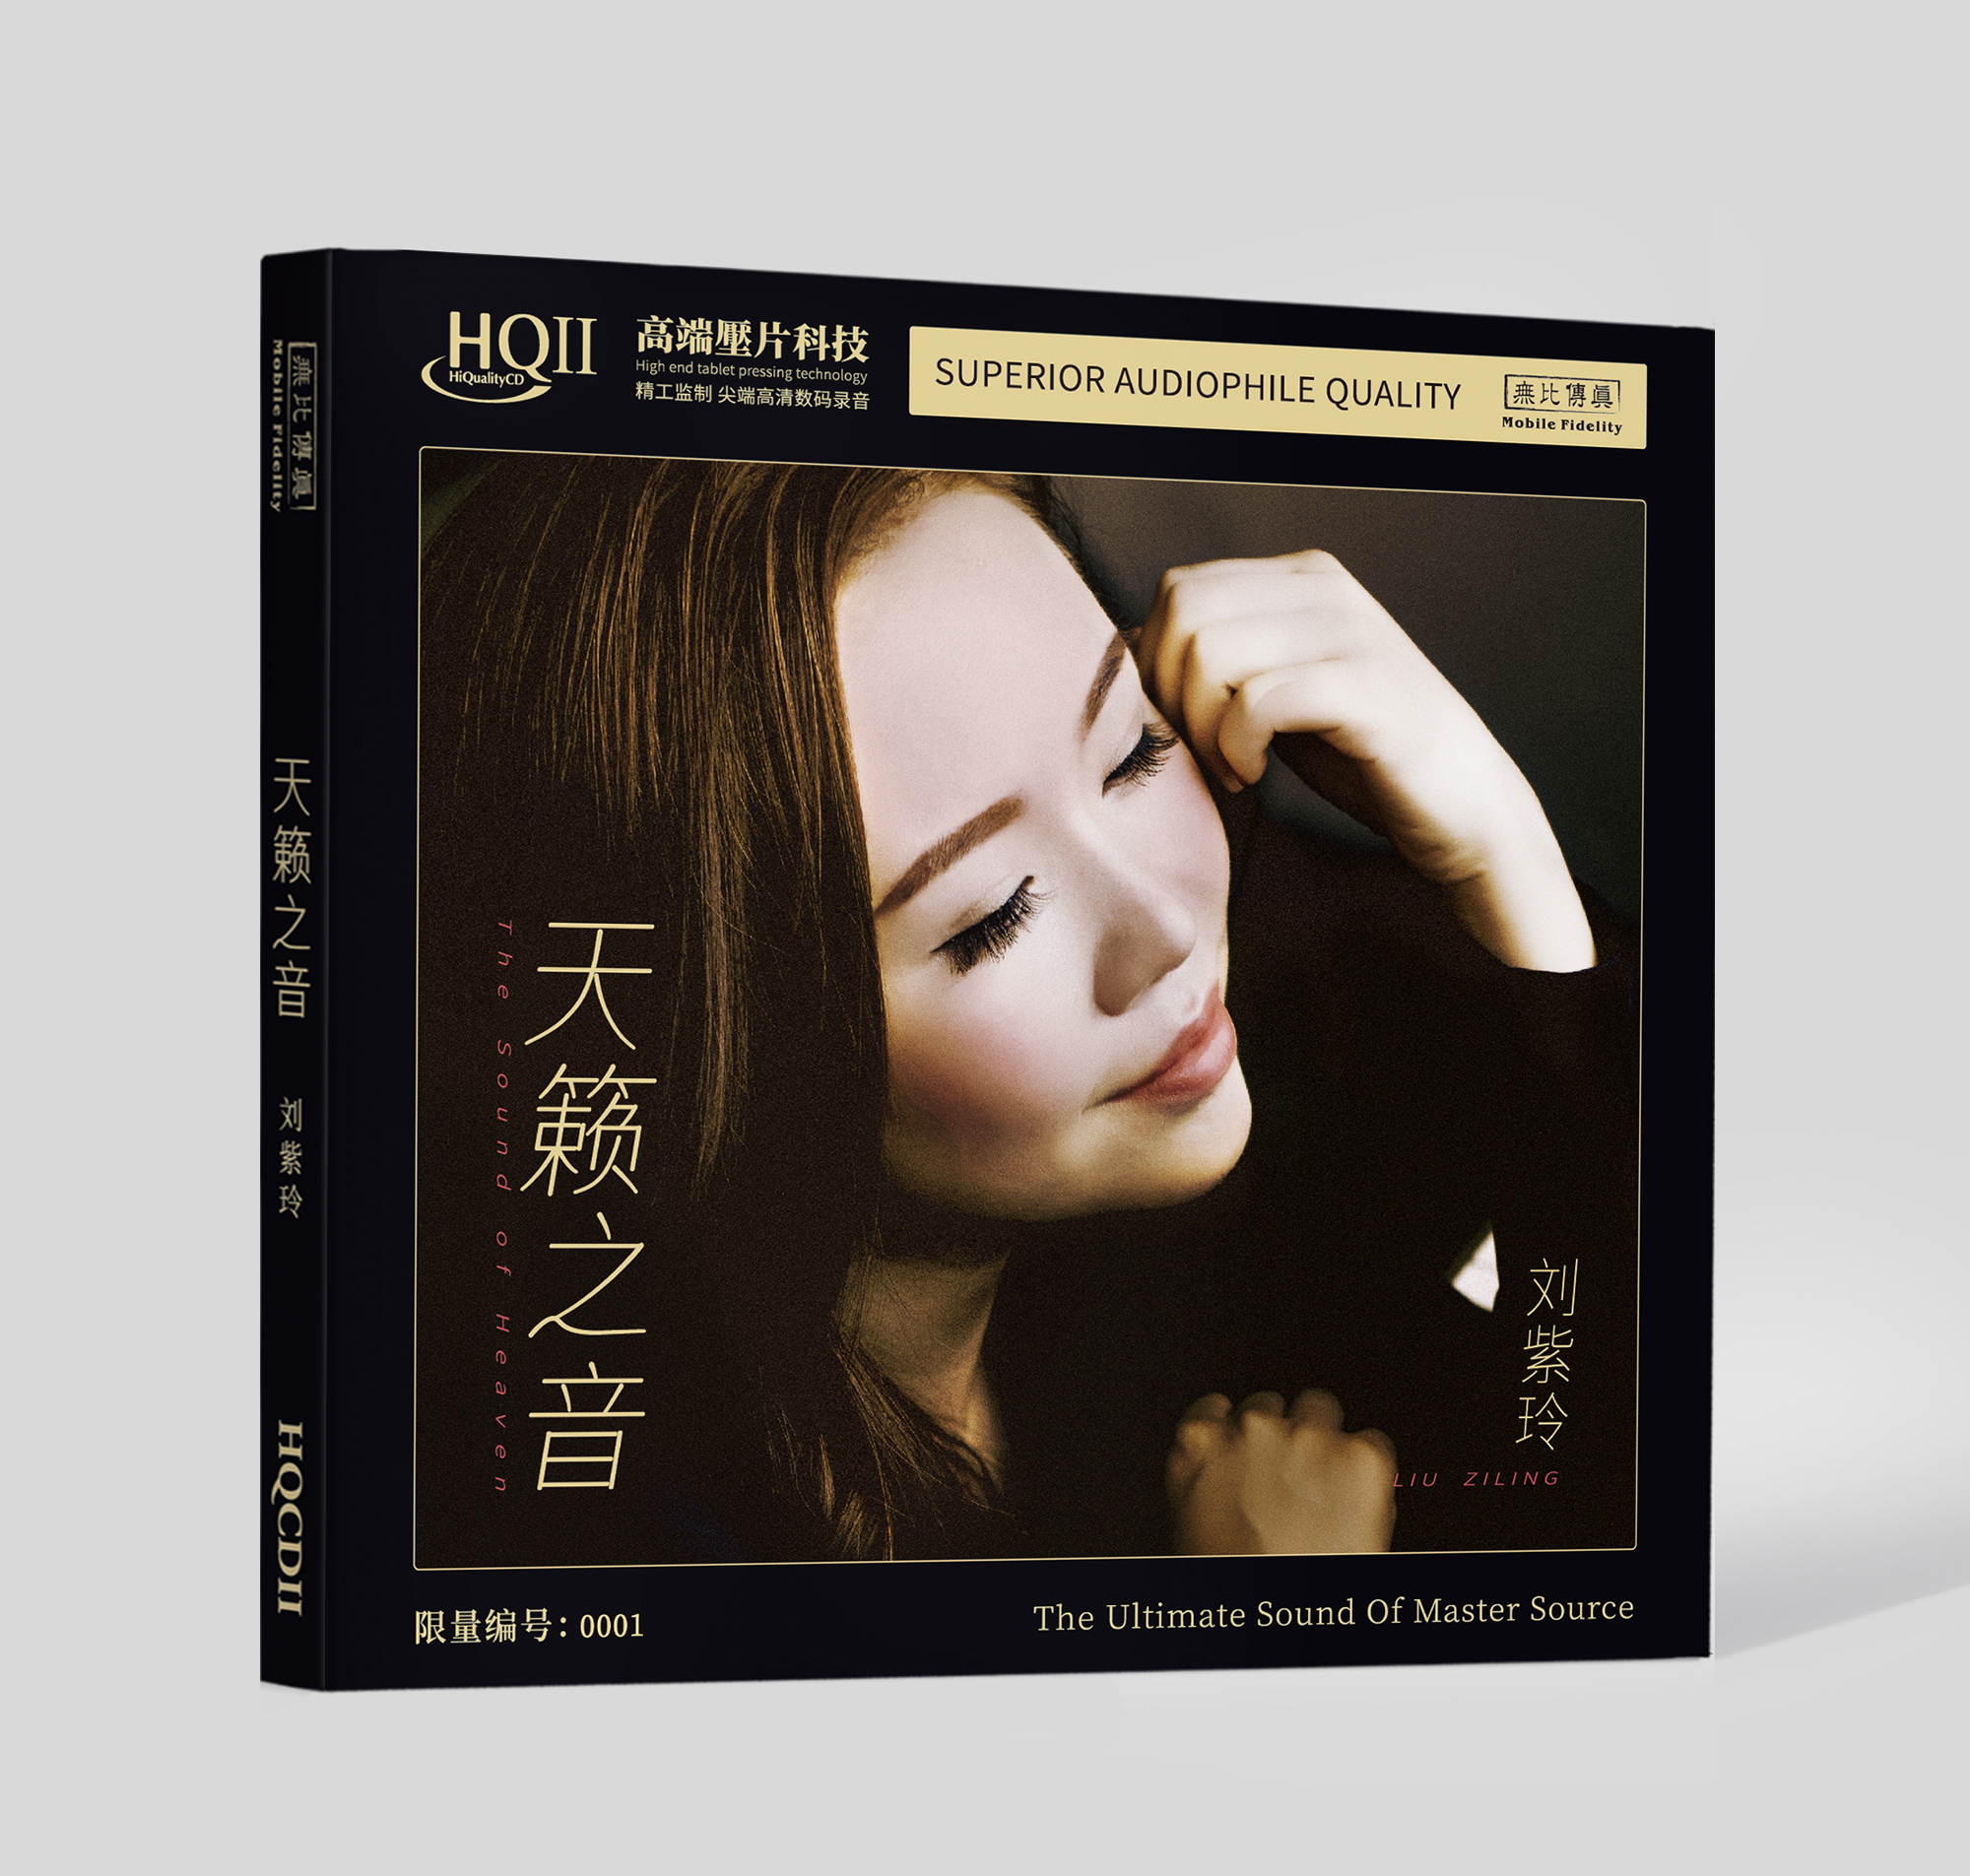 无比传真 刘紫玲《天籁之音》全新专辑 纯银CD & HQ CD & HQ2CD & 1:1HHB24K金碟黄金直刻唱片